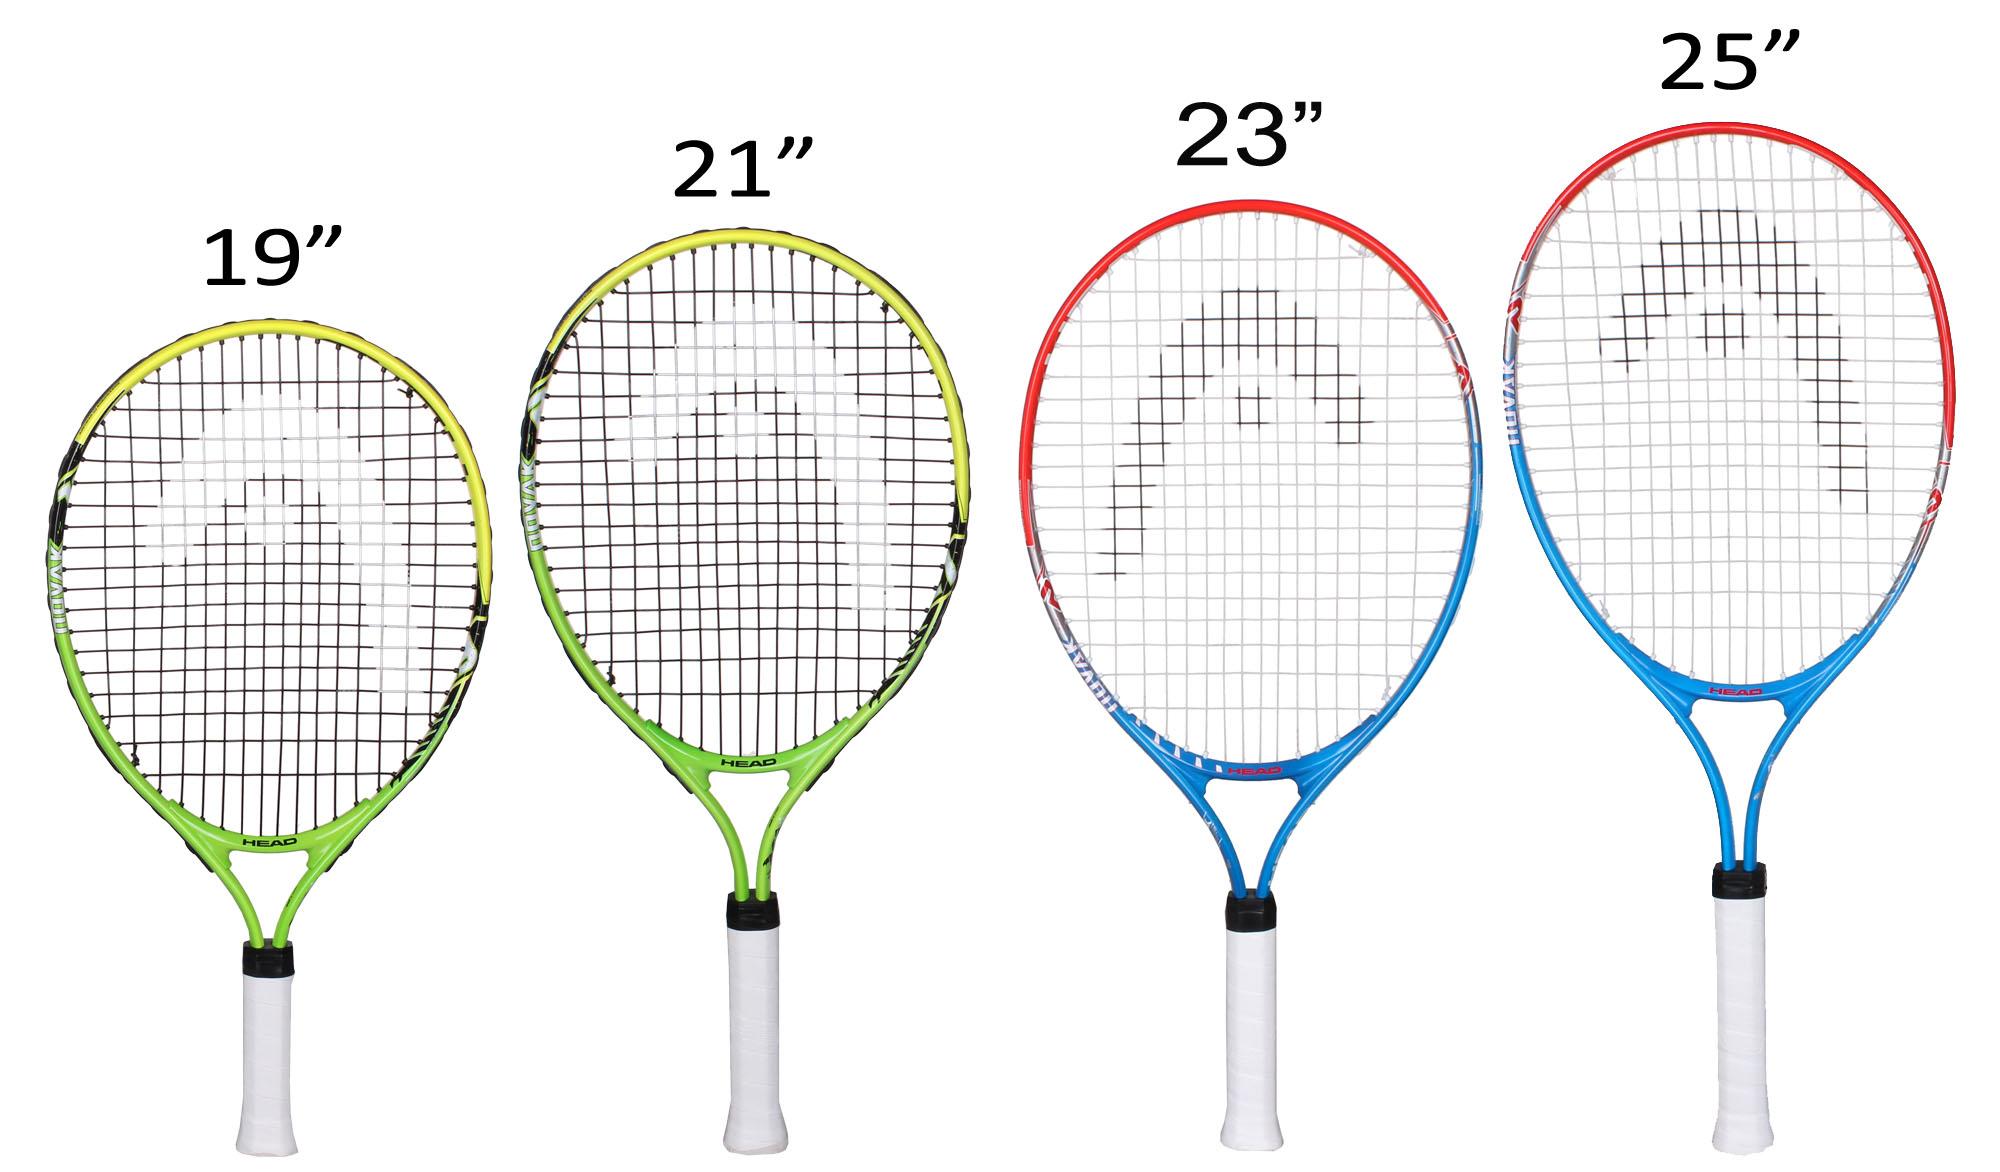 Размеры теннисных ручек. Размеры теннисной ракетки для большого тенниса 23. Ракетка для большого тенниса Размеры 26. Размер ручки ракетки для большого тенниса 3 7/8. Ракетка для большого тенниса head таблица размеров.